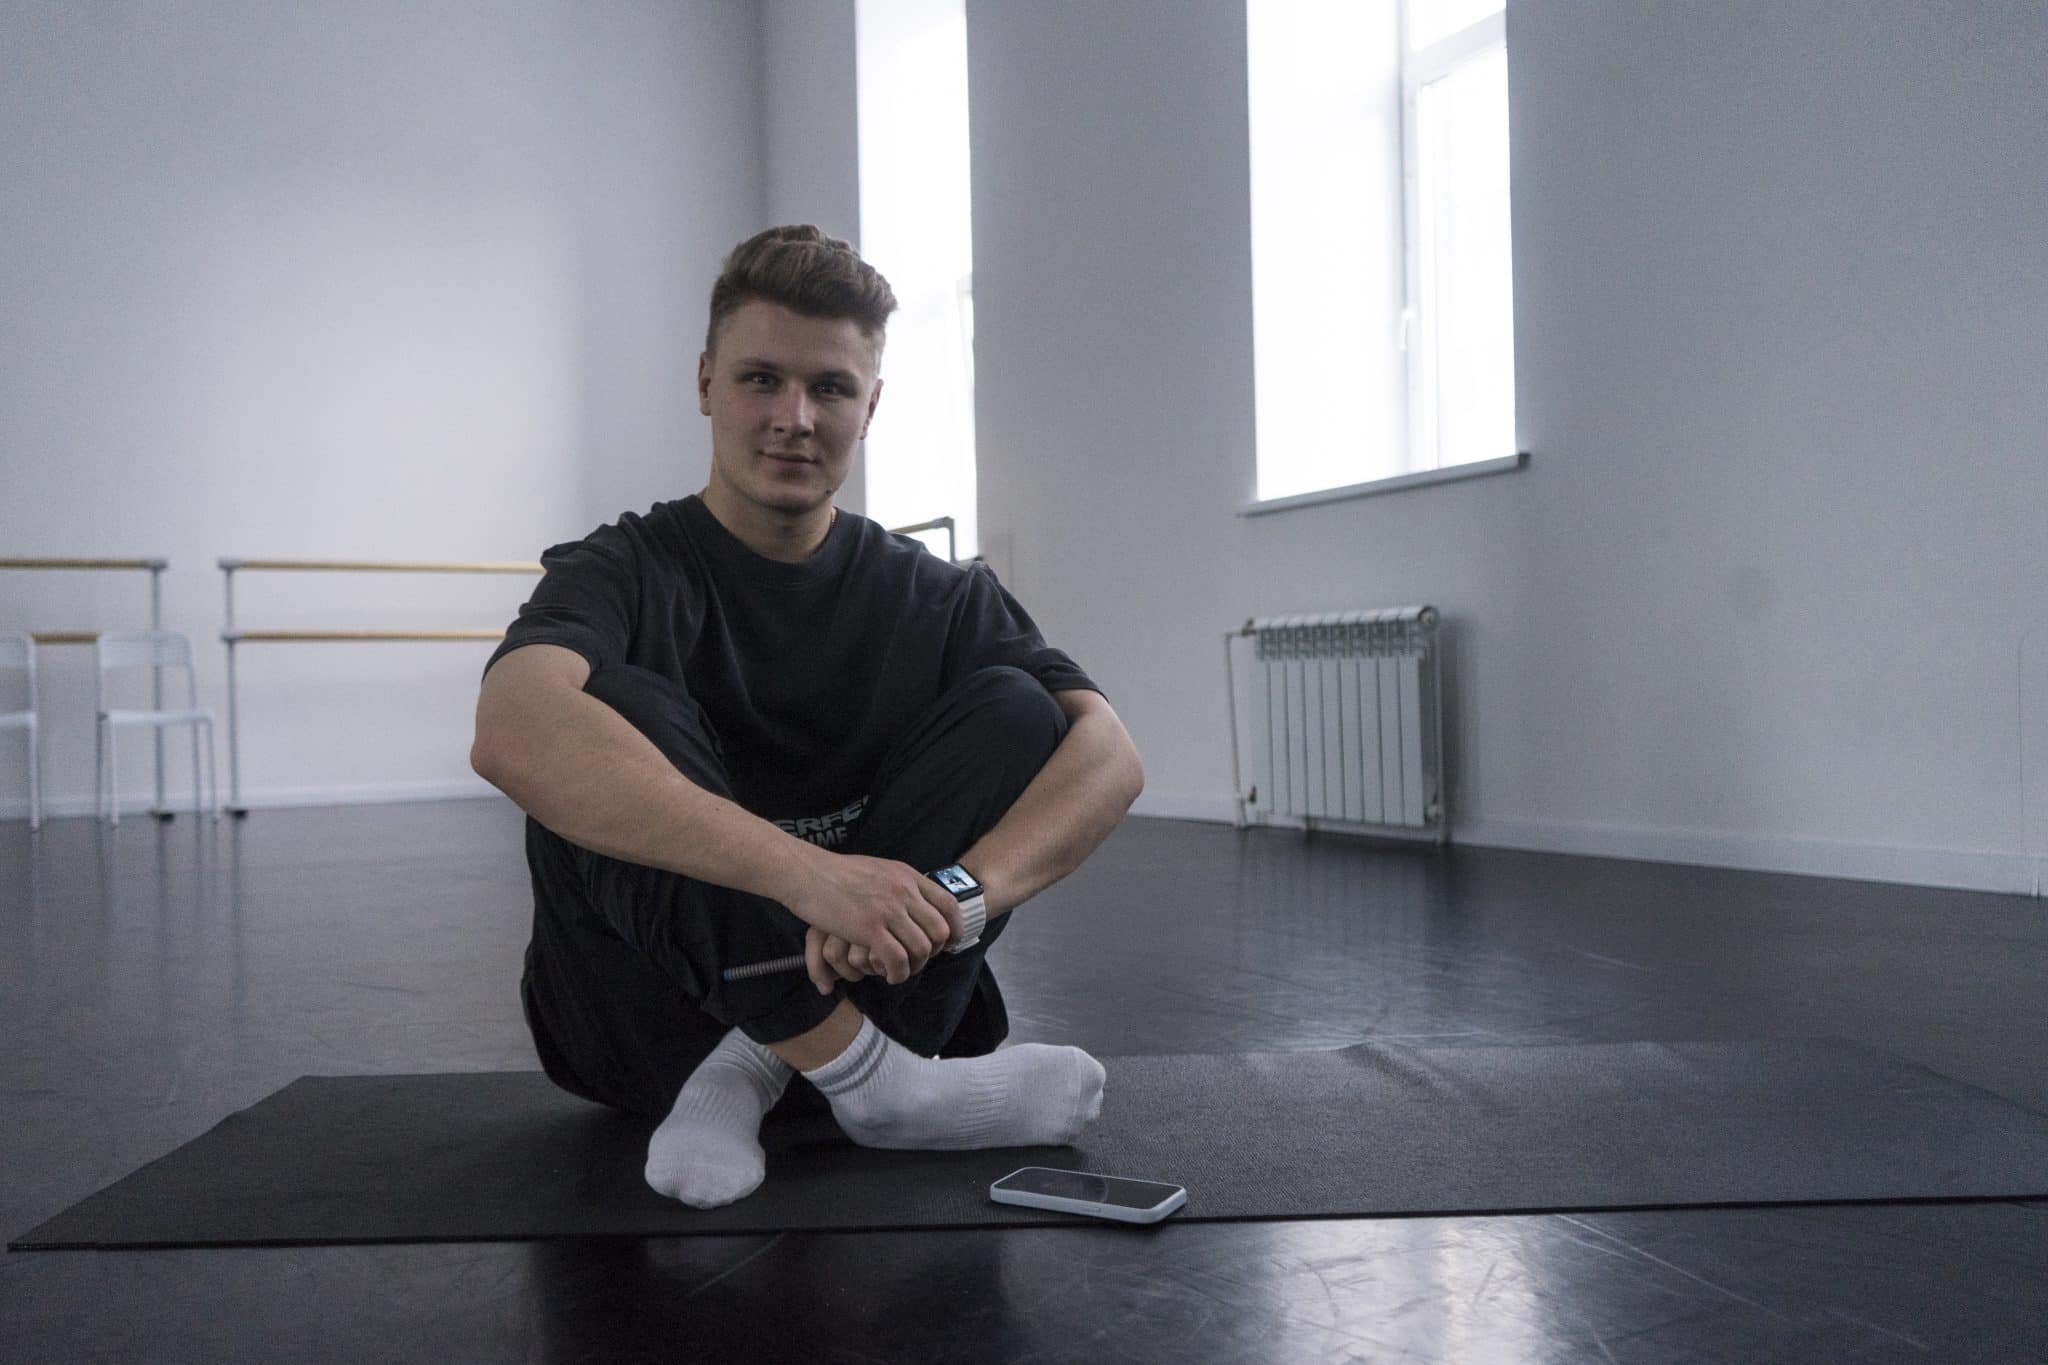 "Я всегда хотел внести свой вклад в хореографию" - интервью с основателем школы танца RBK Даниилом Рыбьяковым